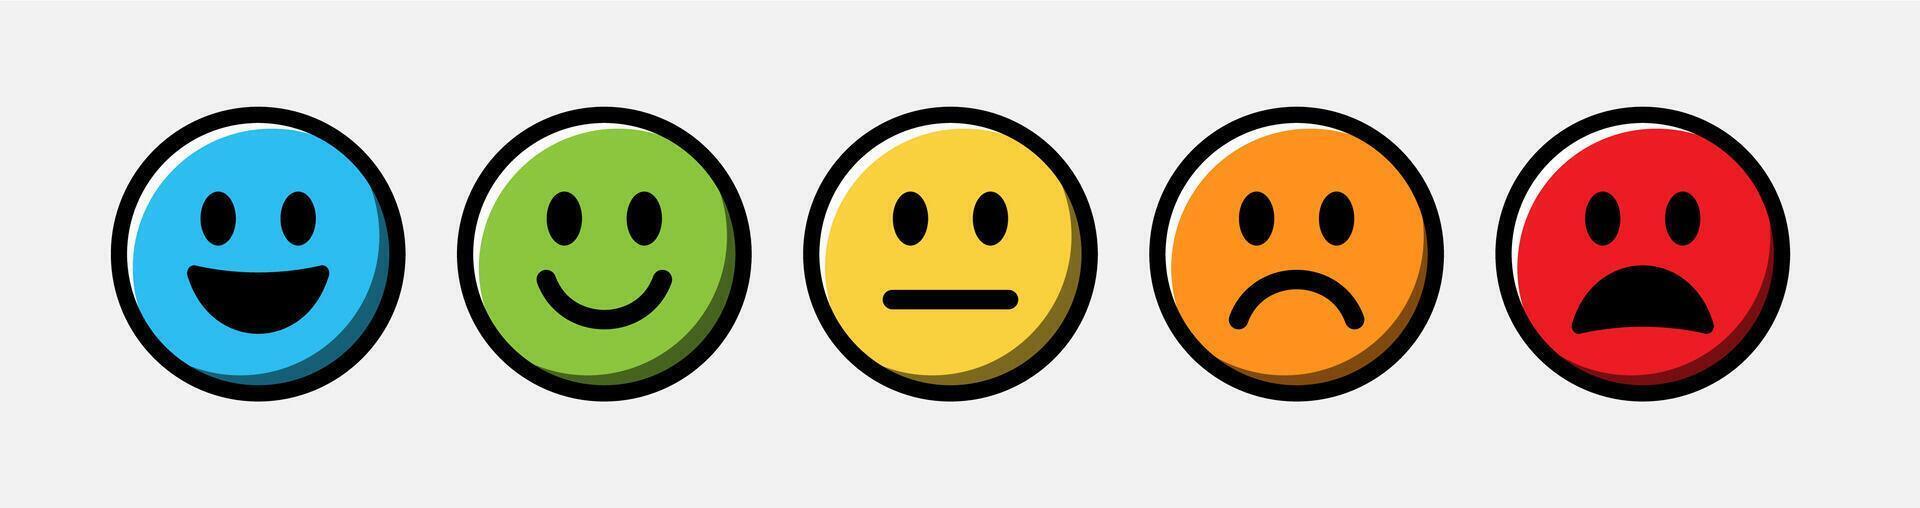 beoordeling tevredenheid terugkoppeling emoties smileys emoji. vector